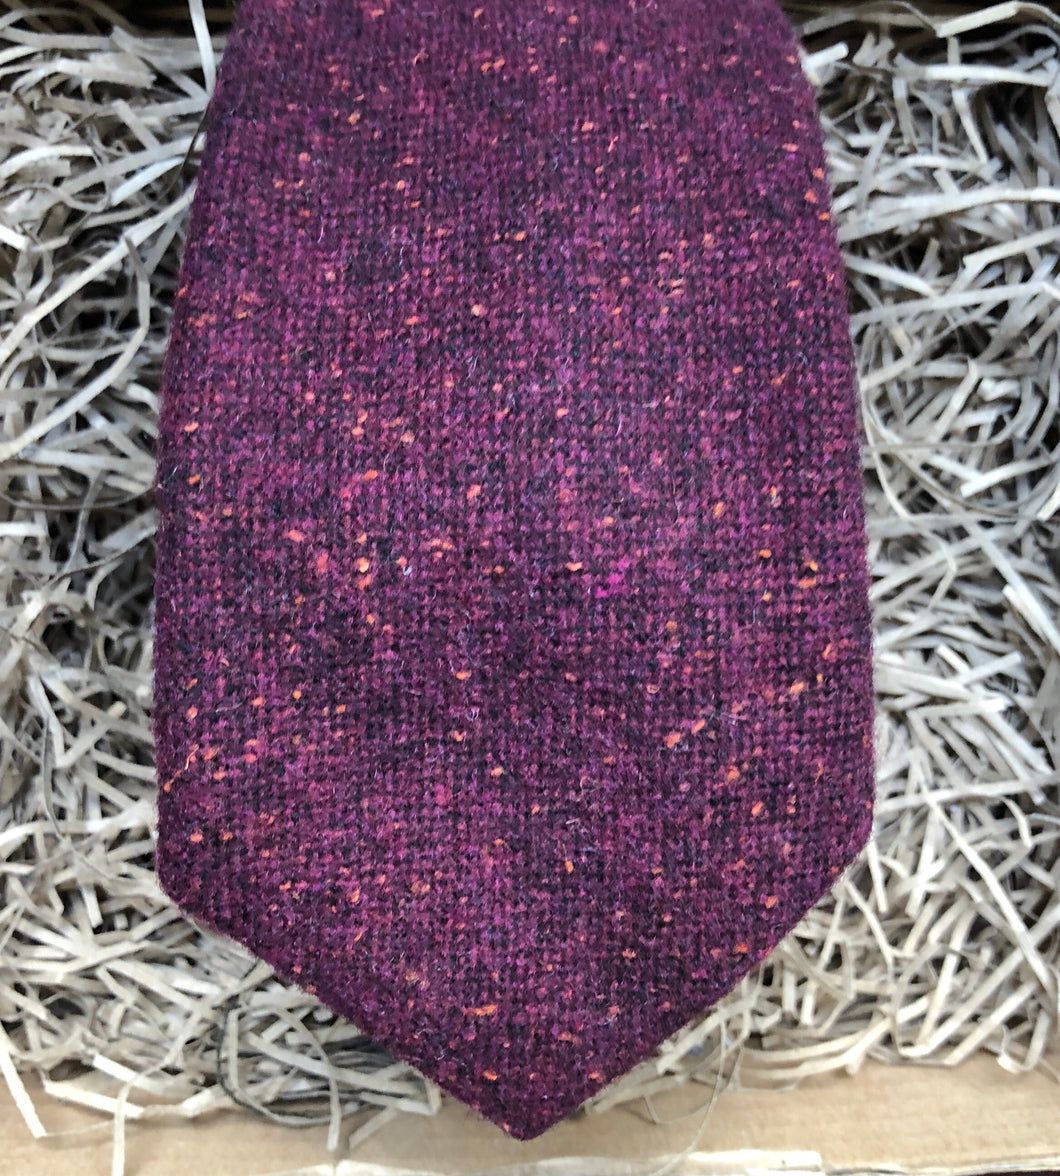 The Bear River:  Dark Purple / Burgundy Red Flecked Tie Purple Ties for men, Groomsmen Gifts, Purple Wedding Ties, Gifts For Men